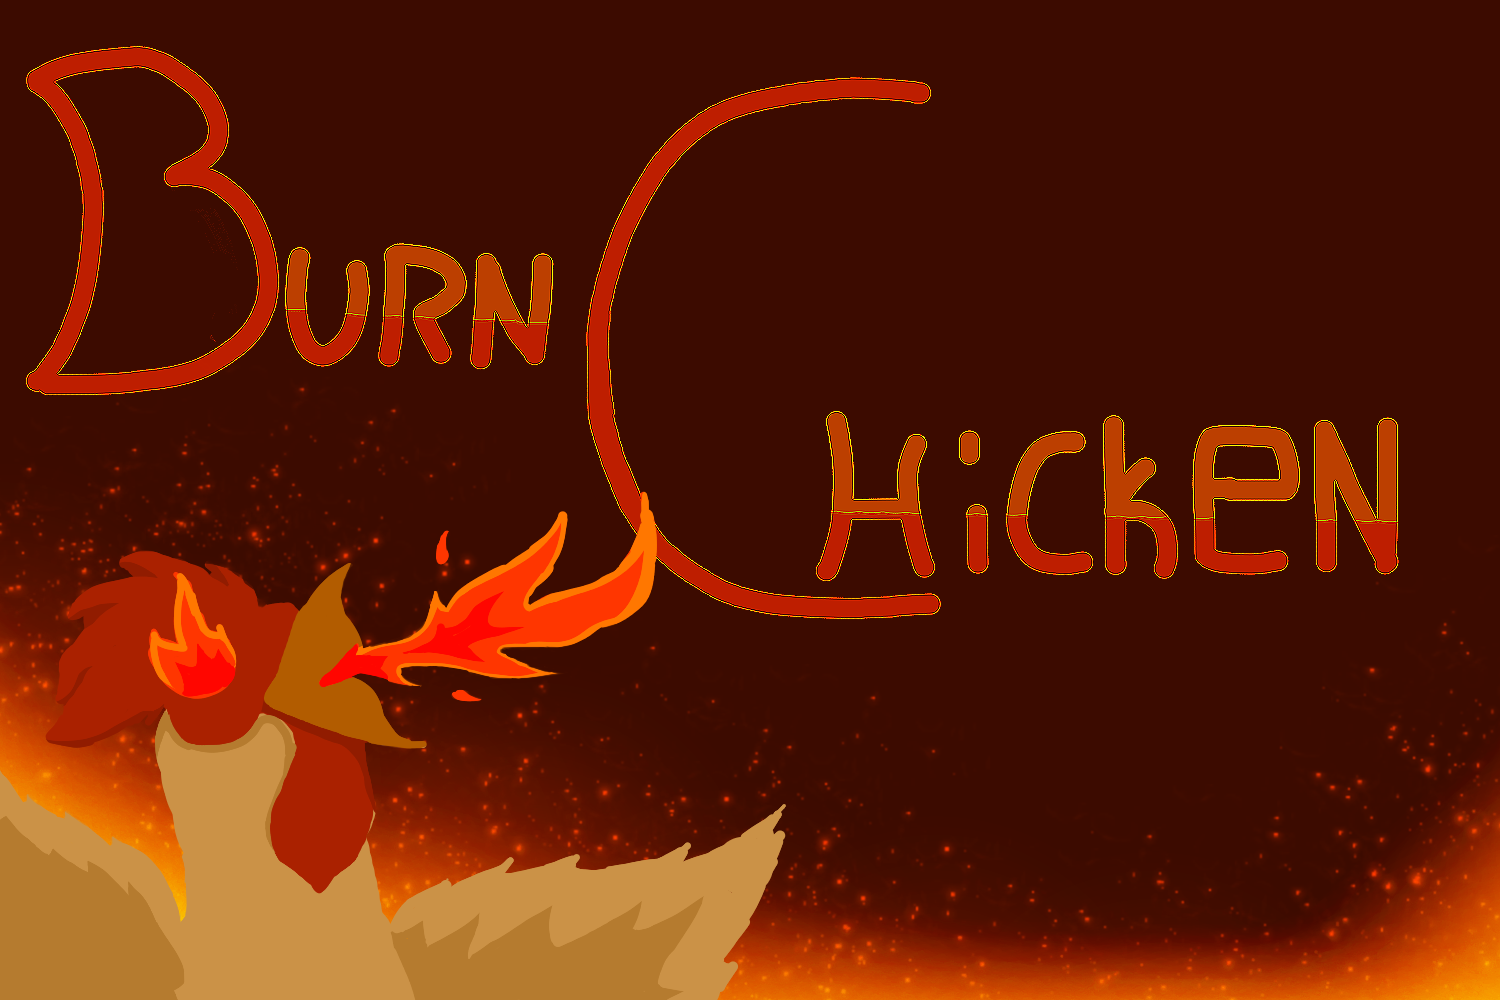 Burn Chicken